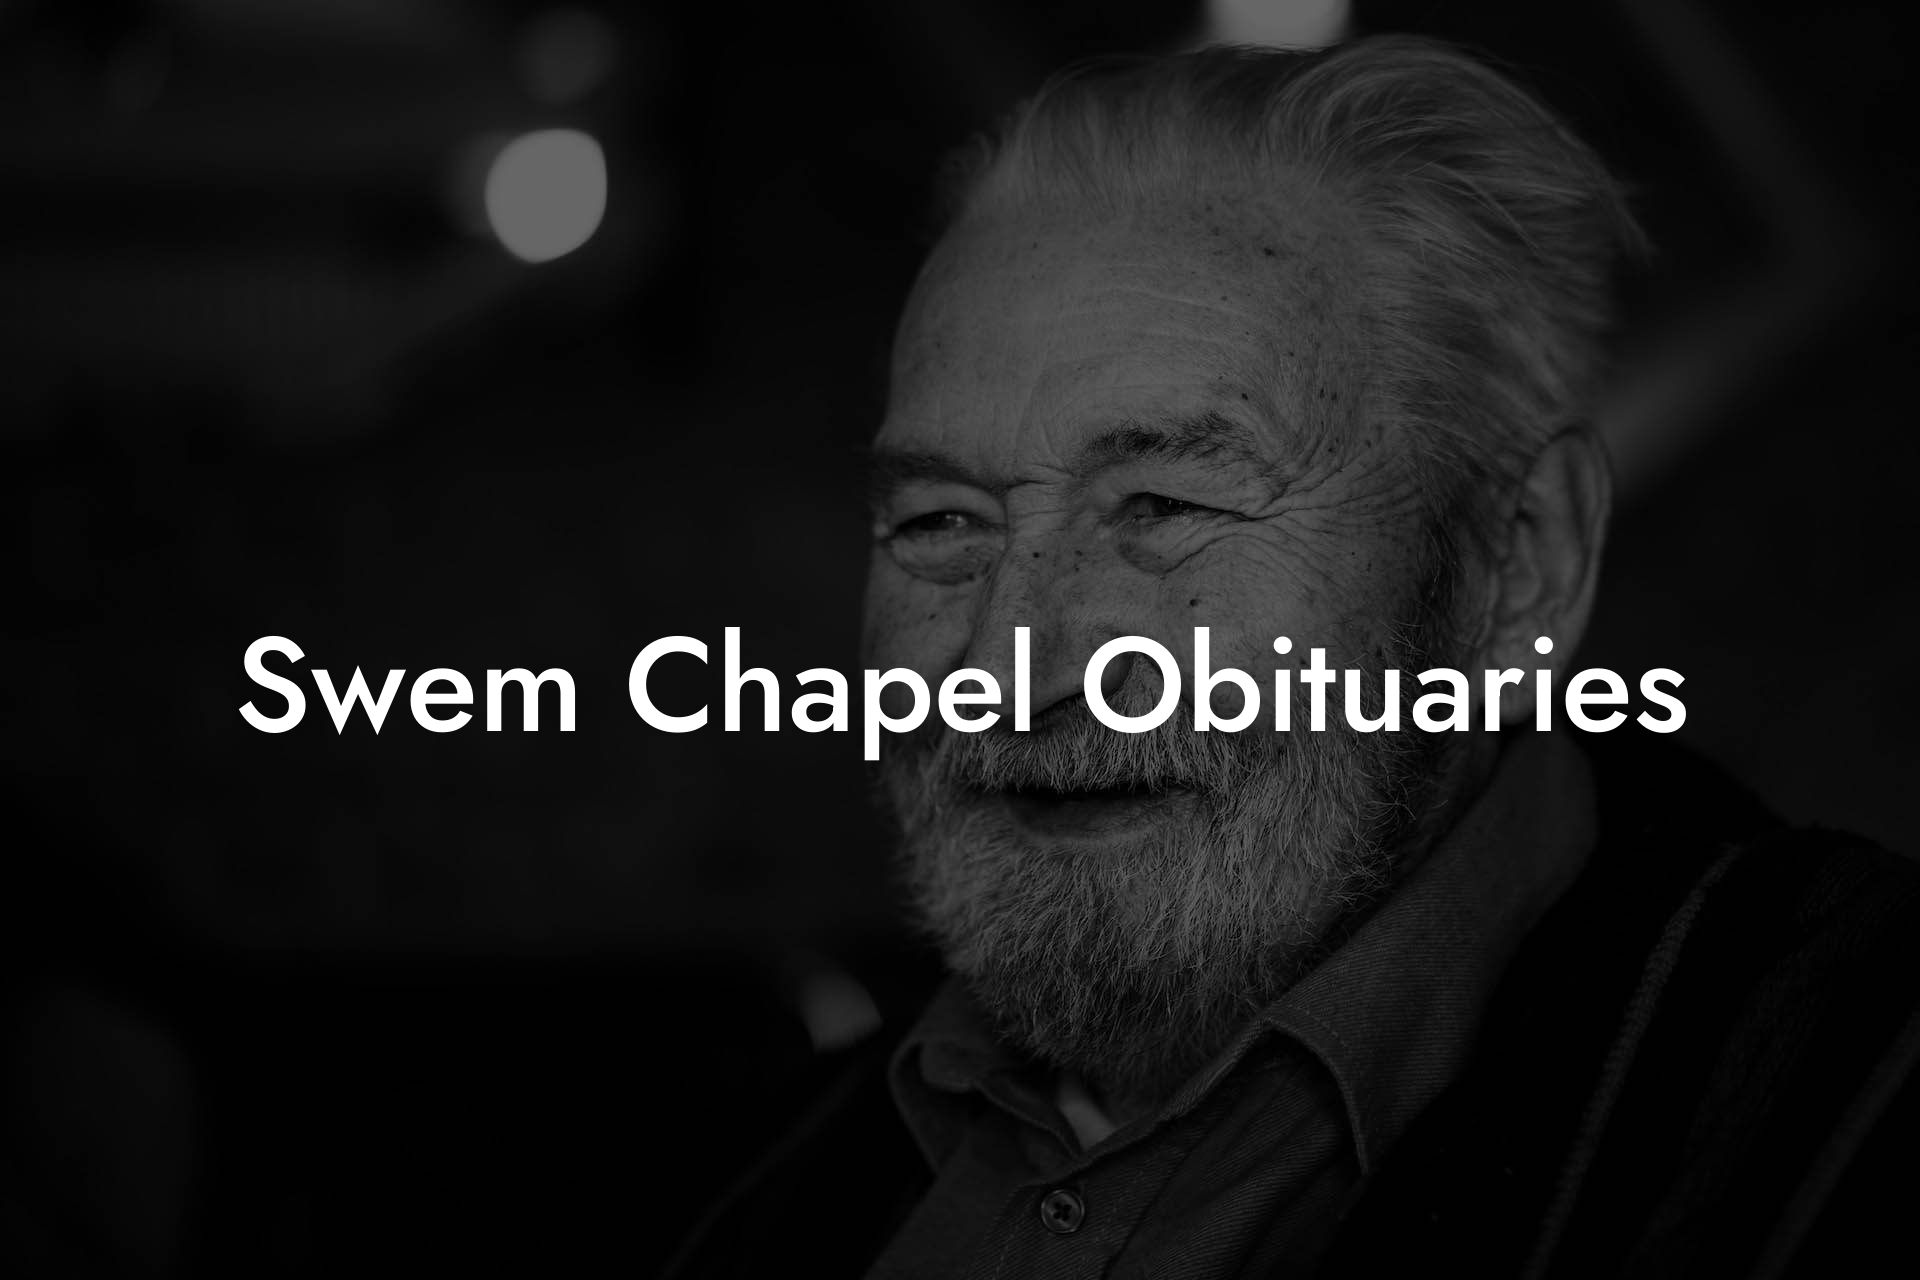 Swem Chapel Obituaries